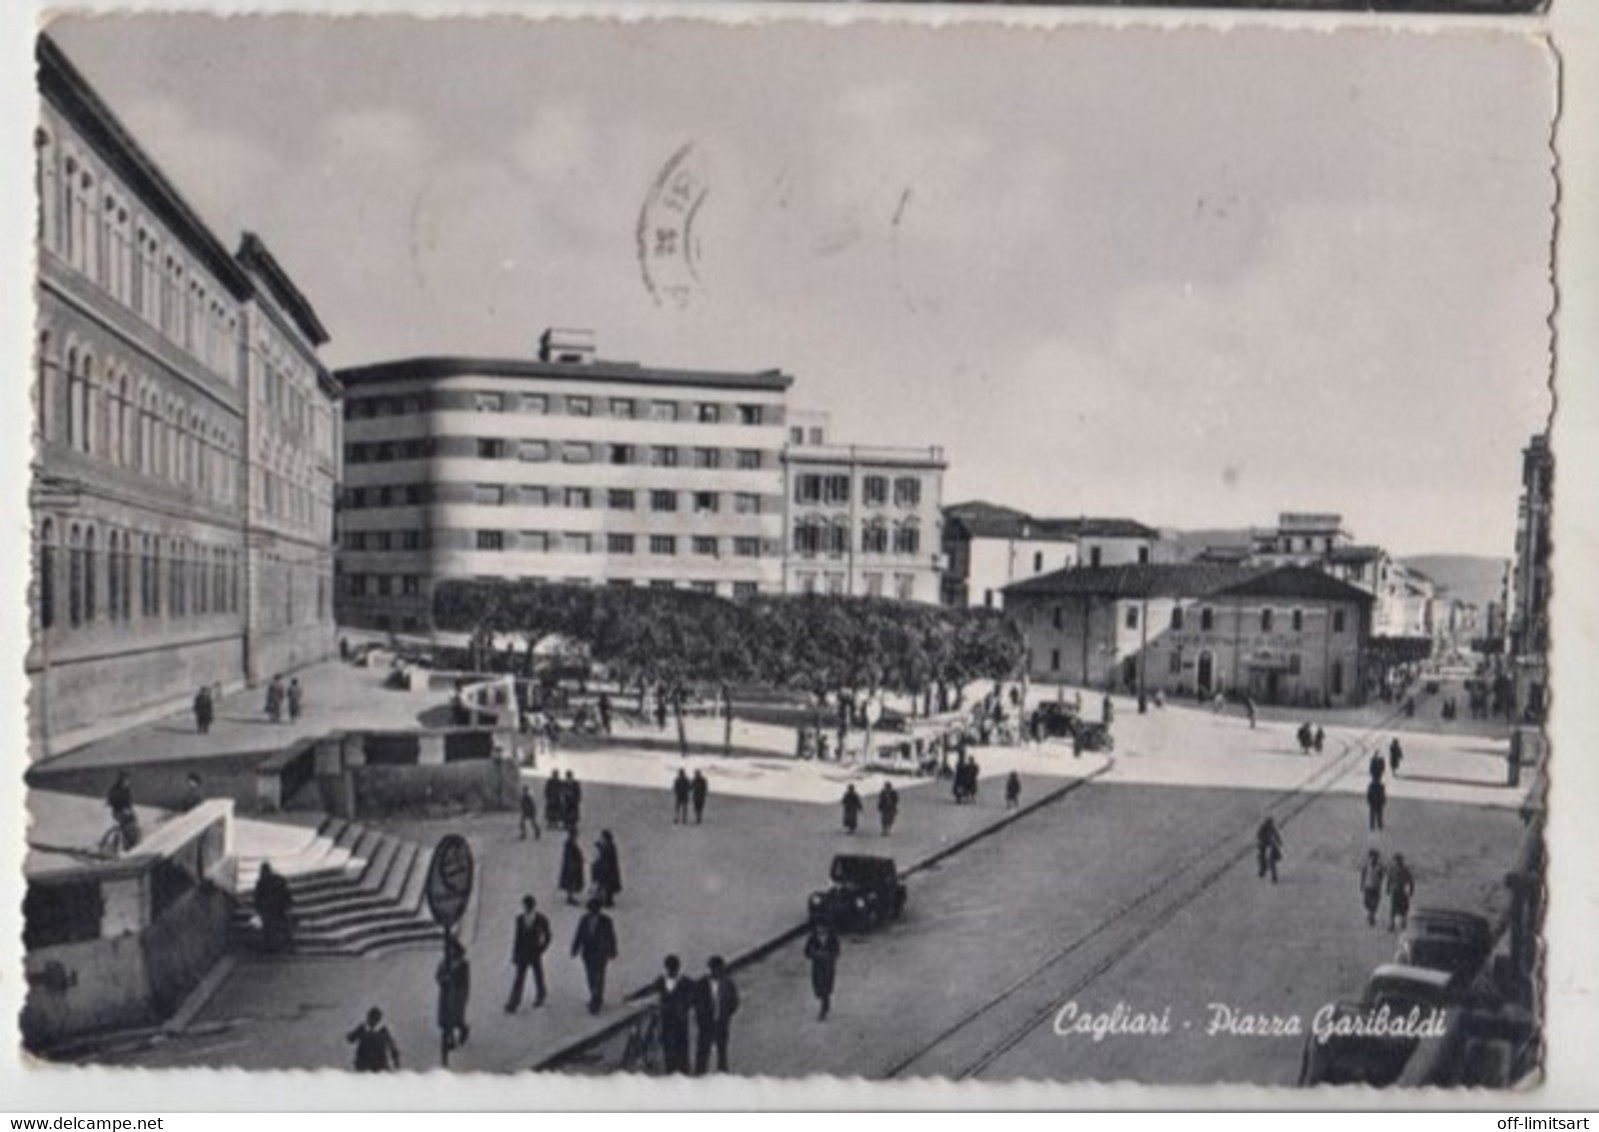 Cagliari, Piazza Garibaldi - Cartolina Viaggiata  20/5/1956 - (577) - Cagliari